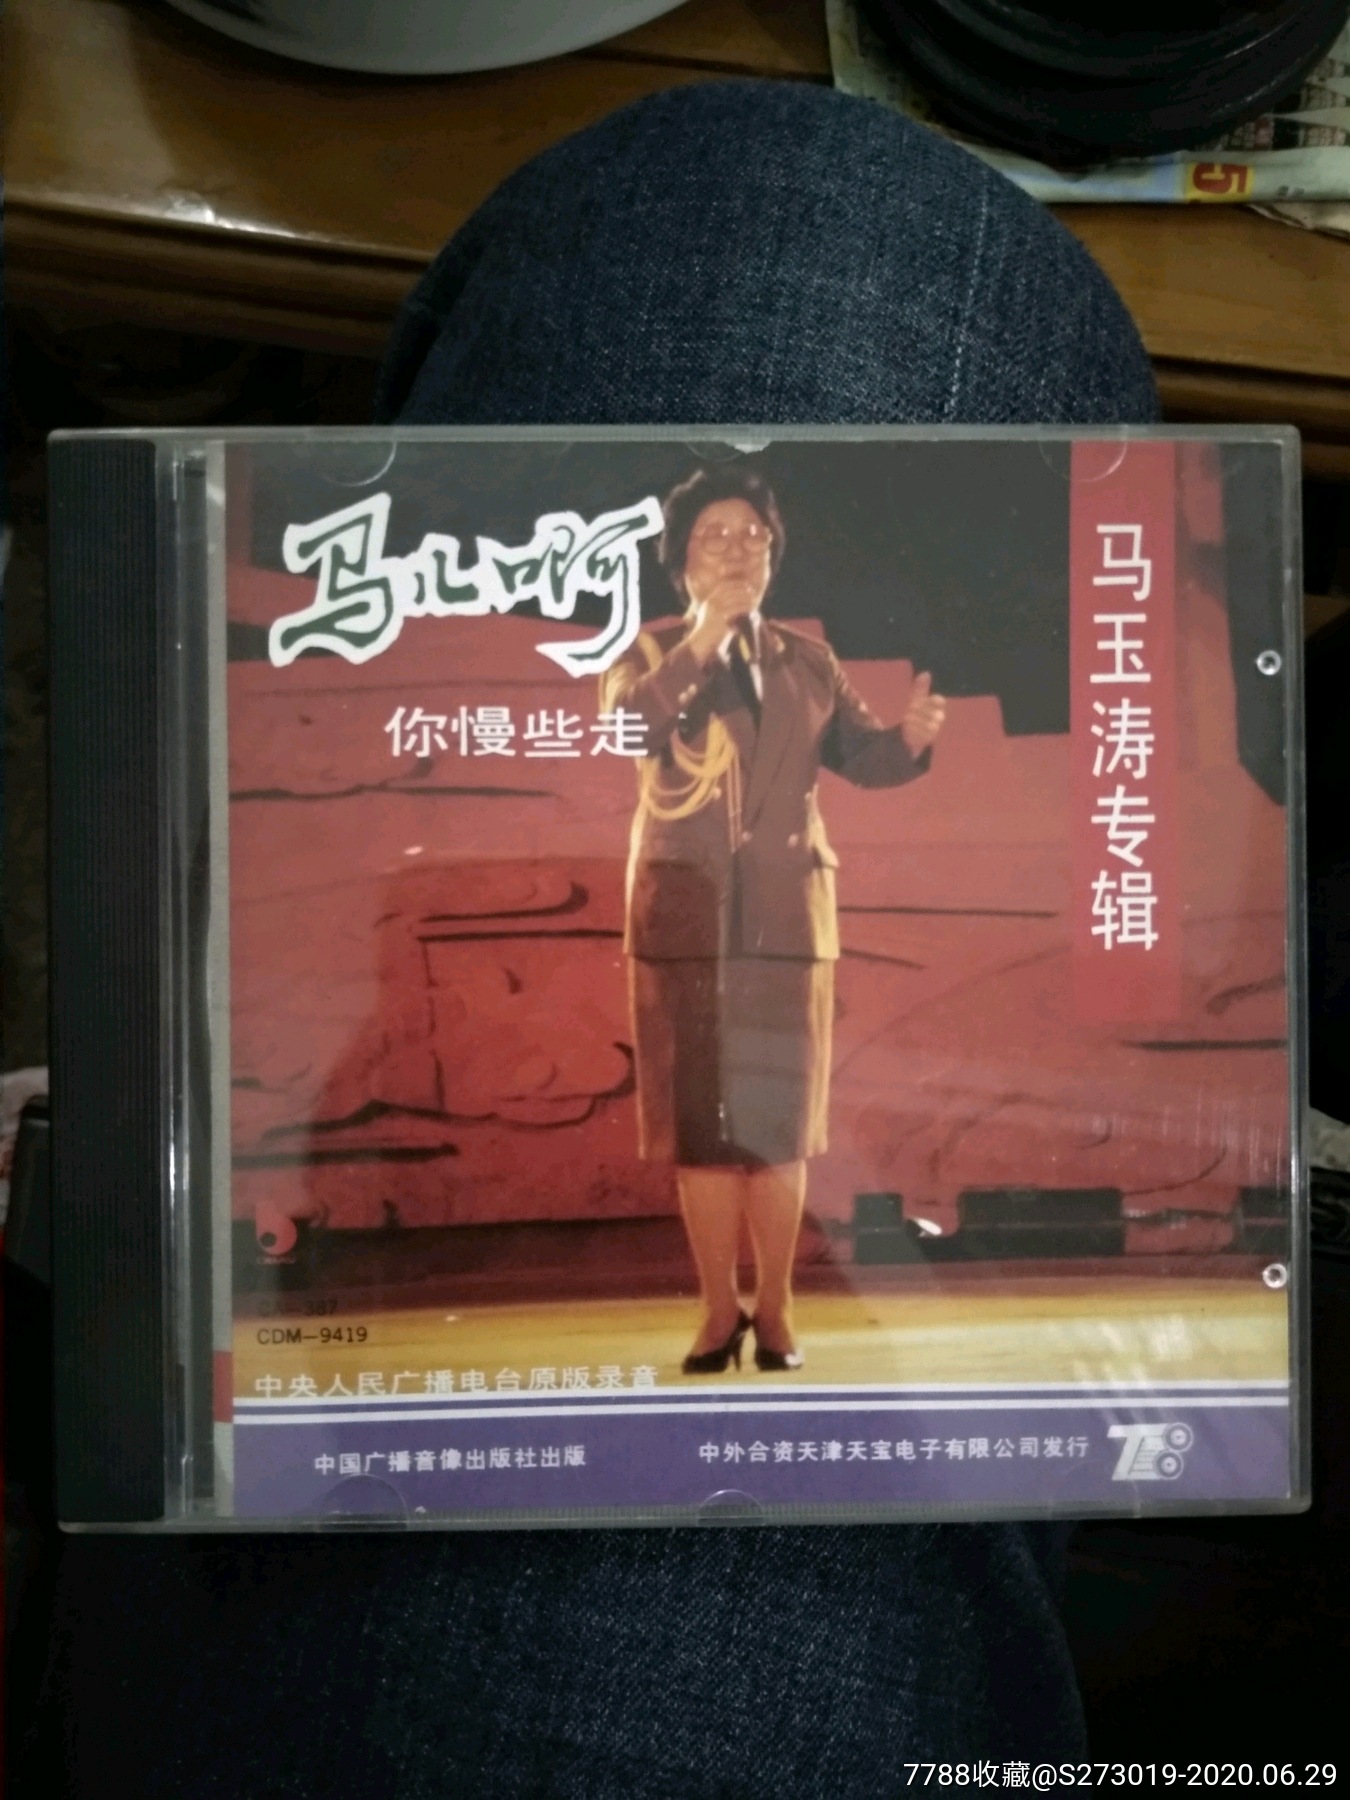 马玉涛cd专辑马儿啊你慢些走